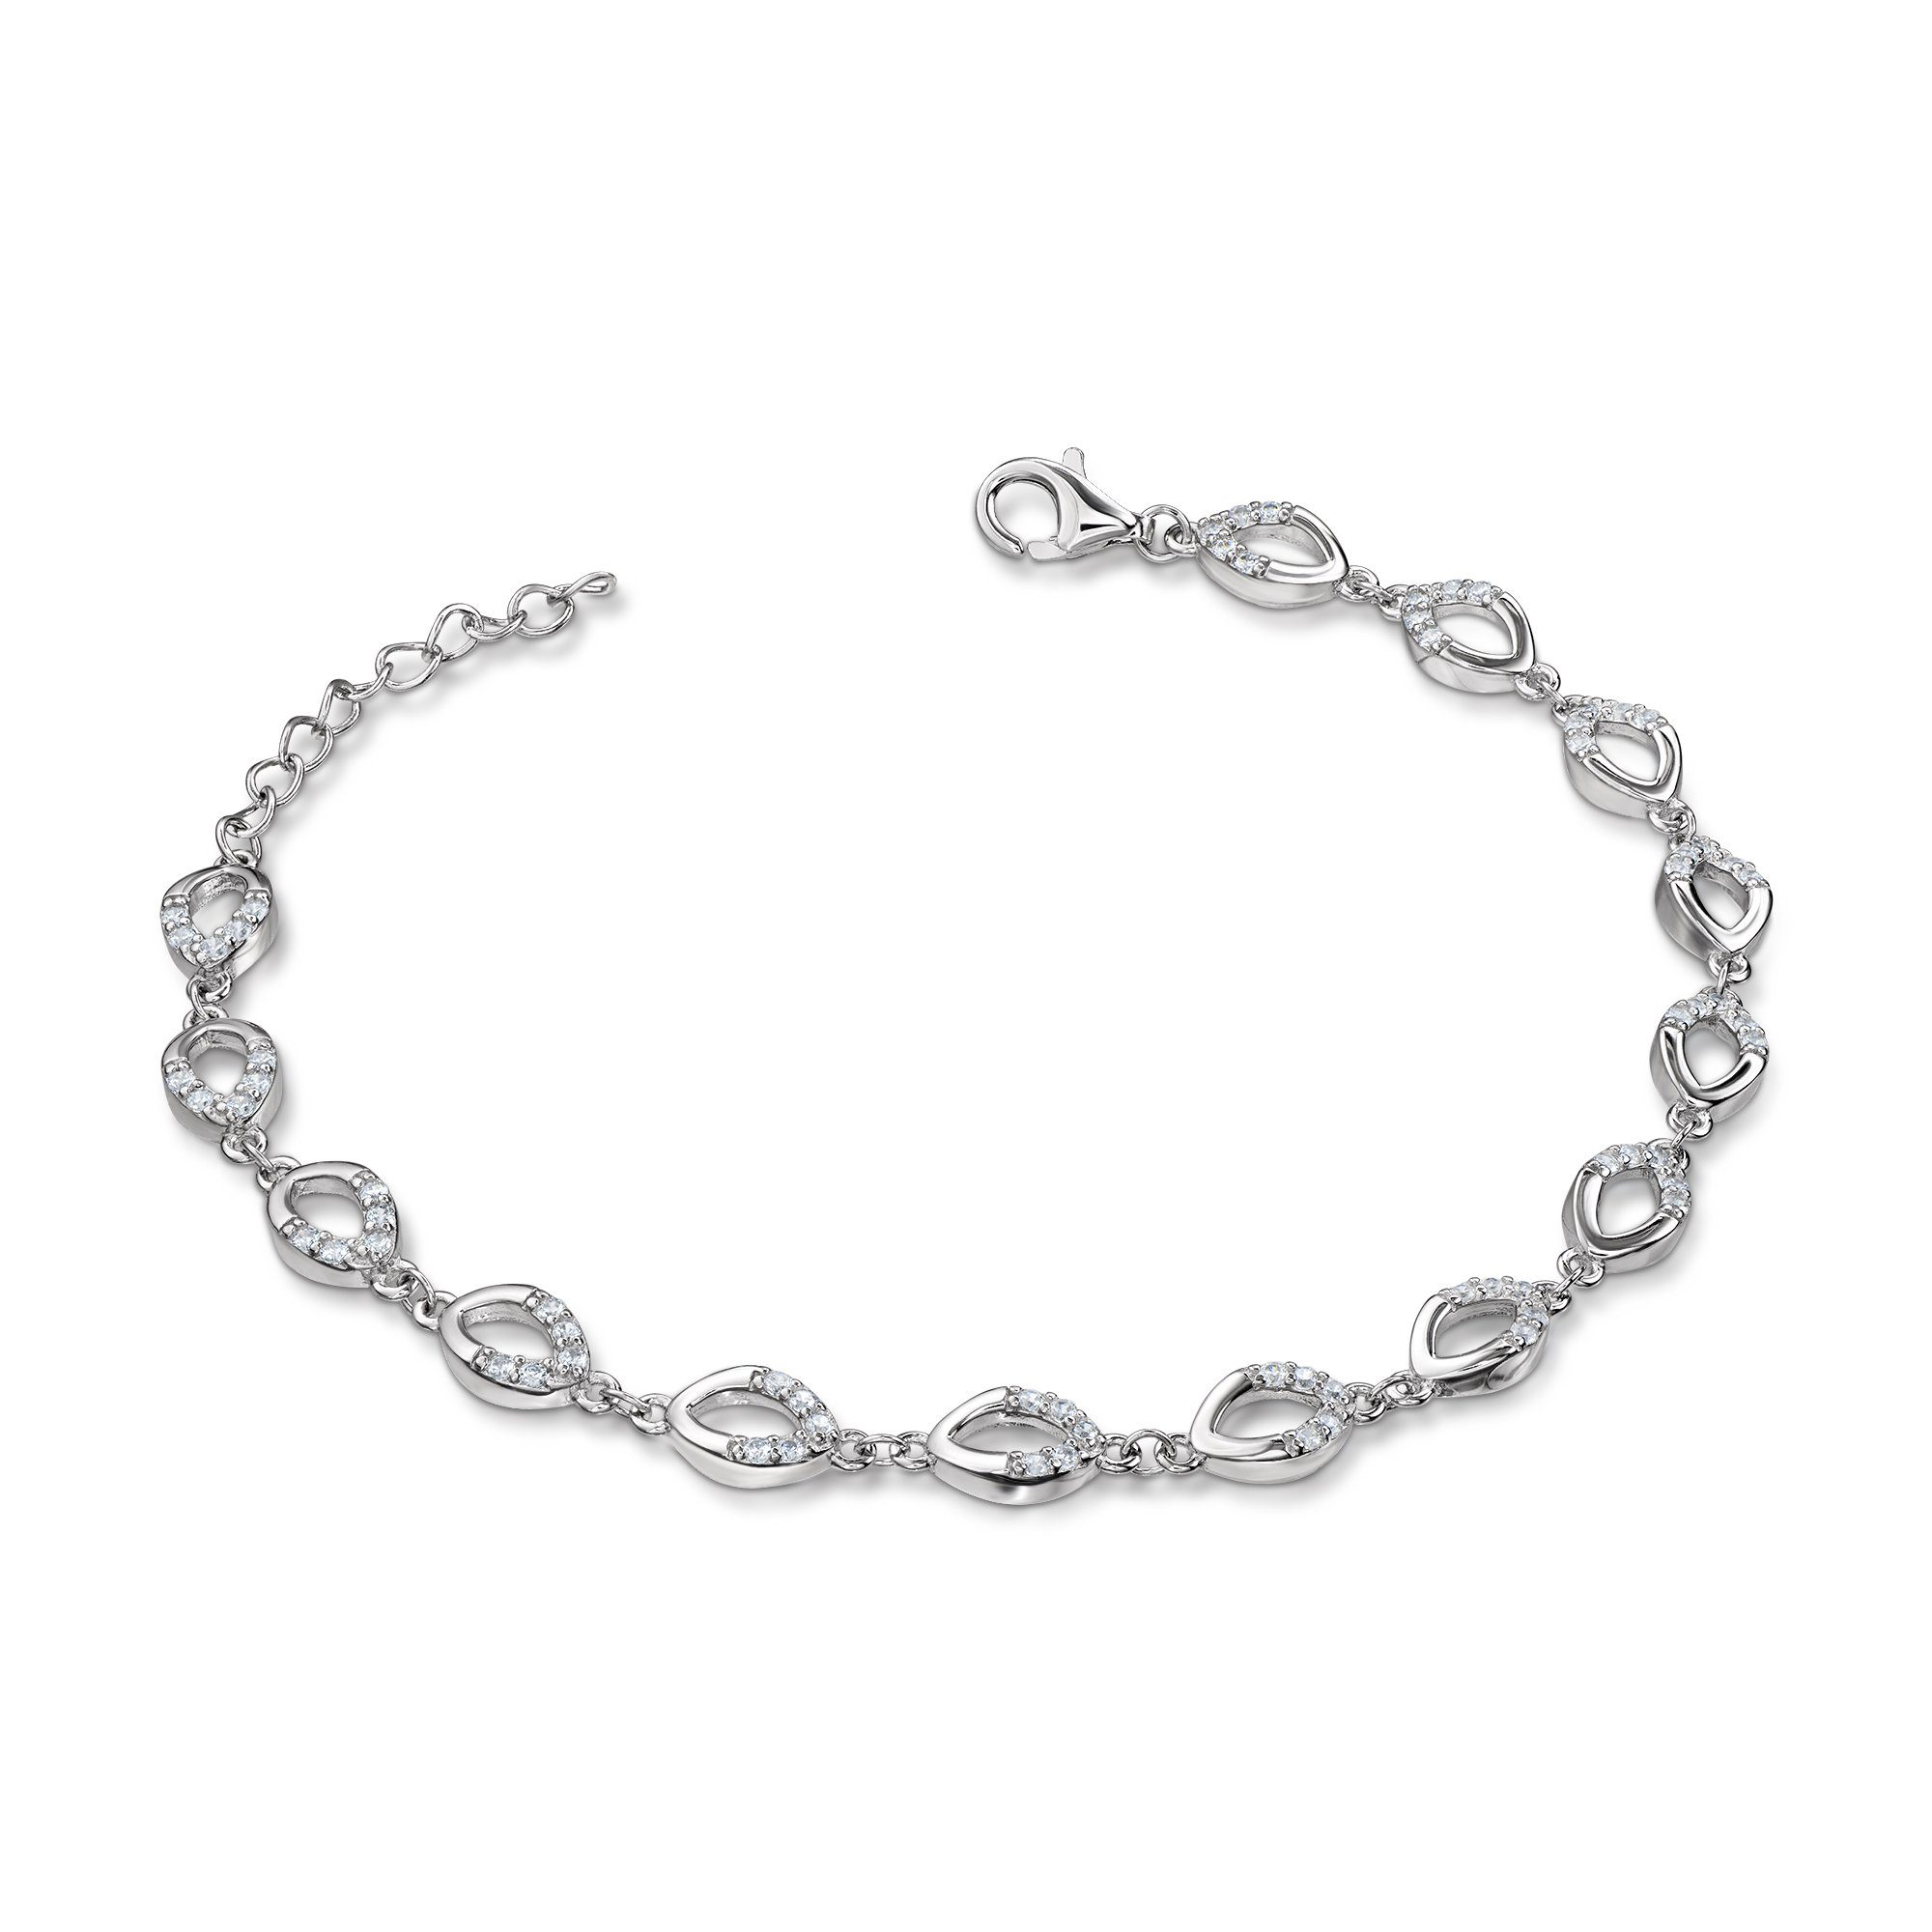 Schöner-SD Silberarmband Damen-Armband 925 Silber ovale Glieder mit  Zirkonia, anlaufgeschützt